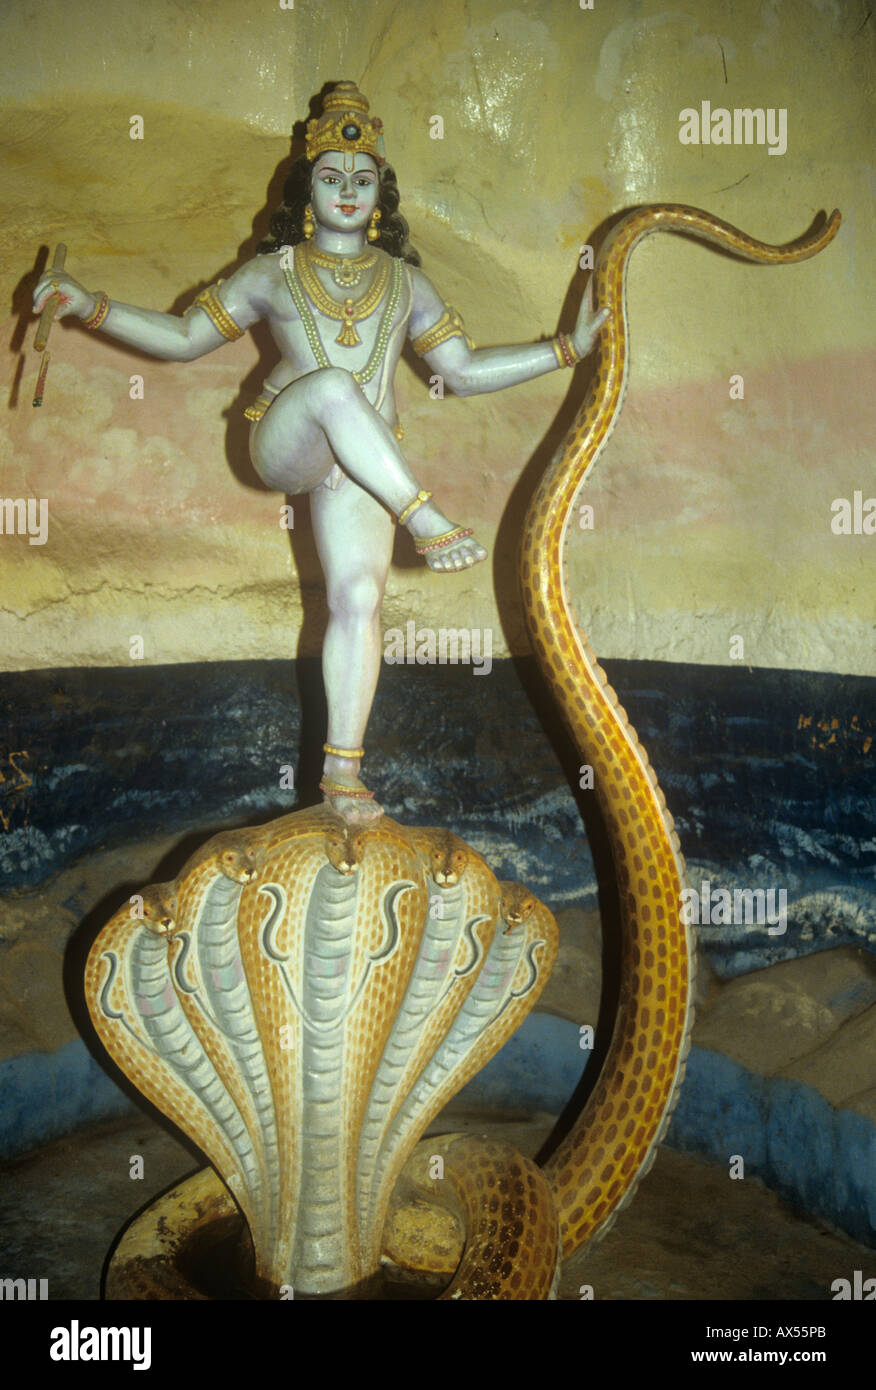 R hindu gott lord krishna tanzt auf n kopf s kaliya kãnig r schlangen stockfotografie